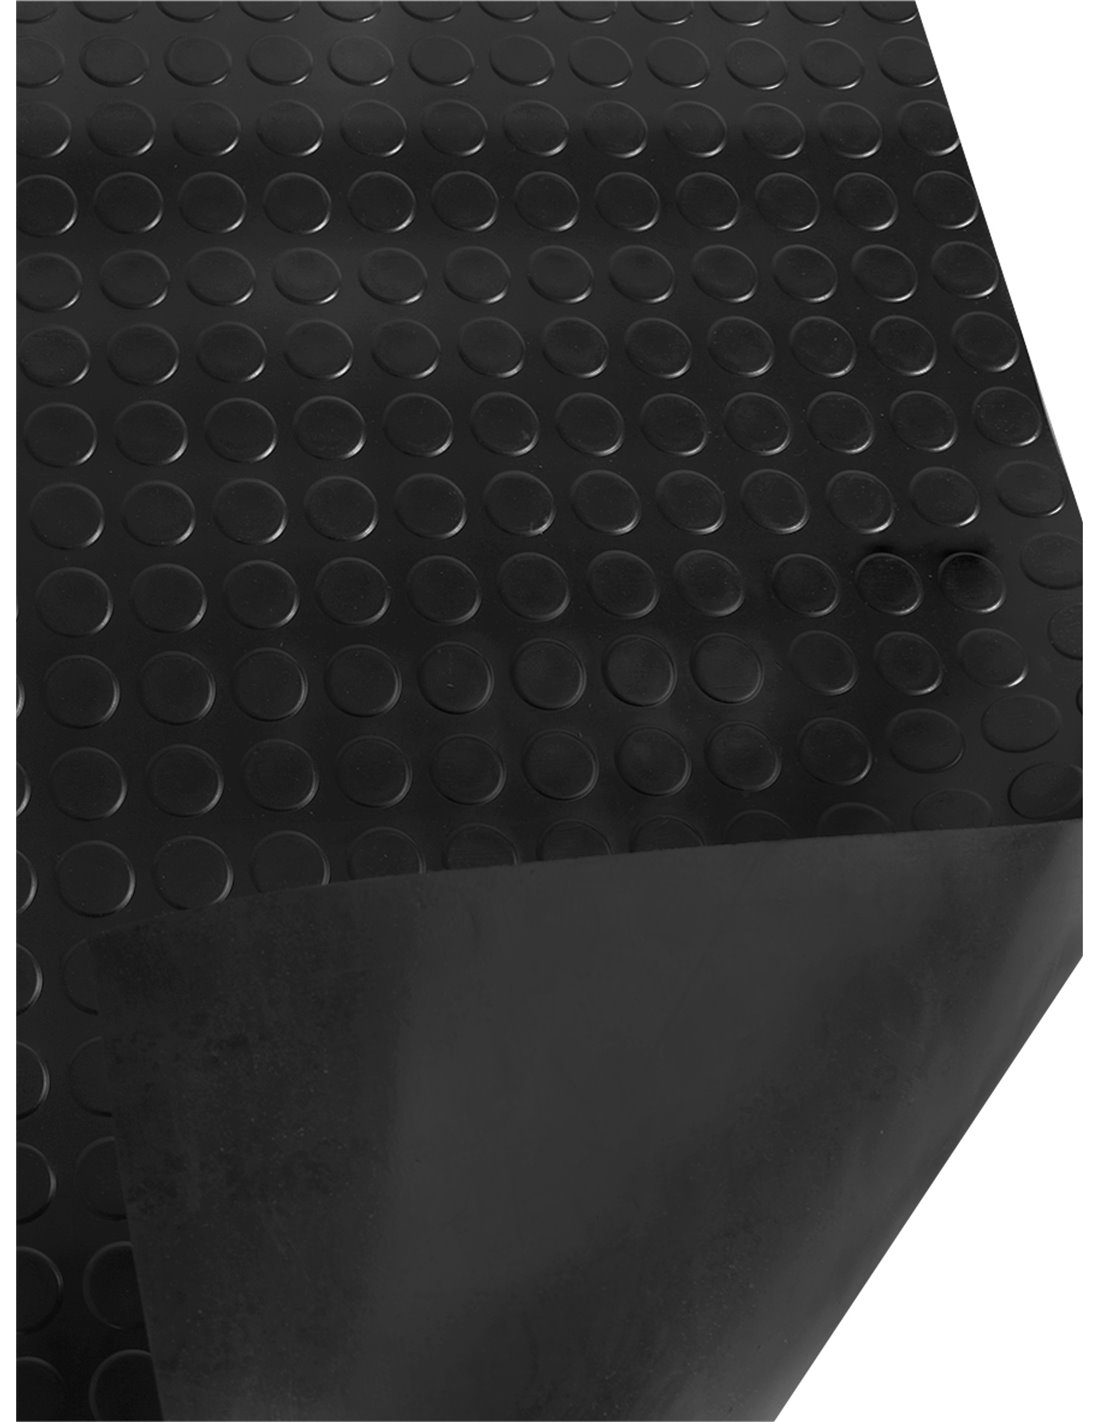 Suelo Goma Circulo Negro - Rollo 3 mm 15 x 1,20 m